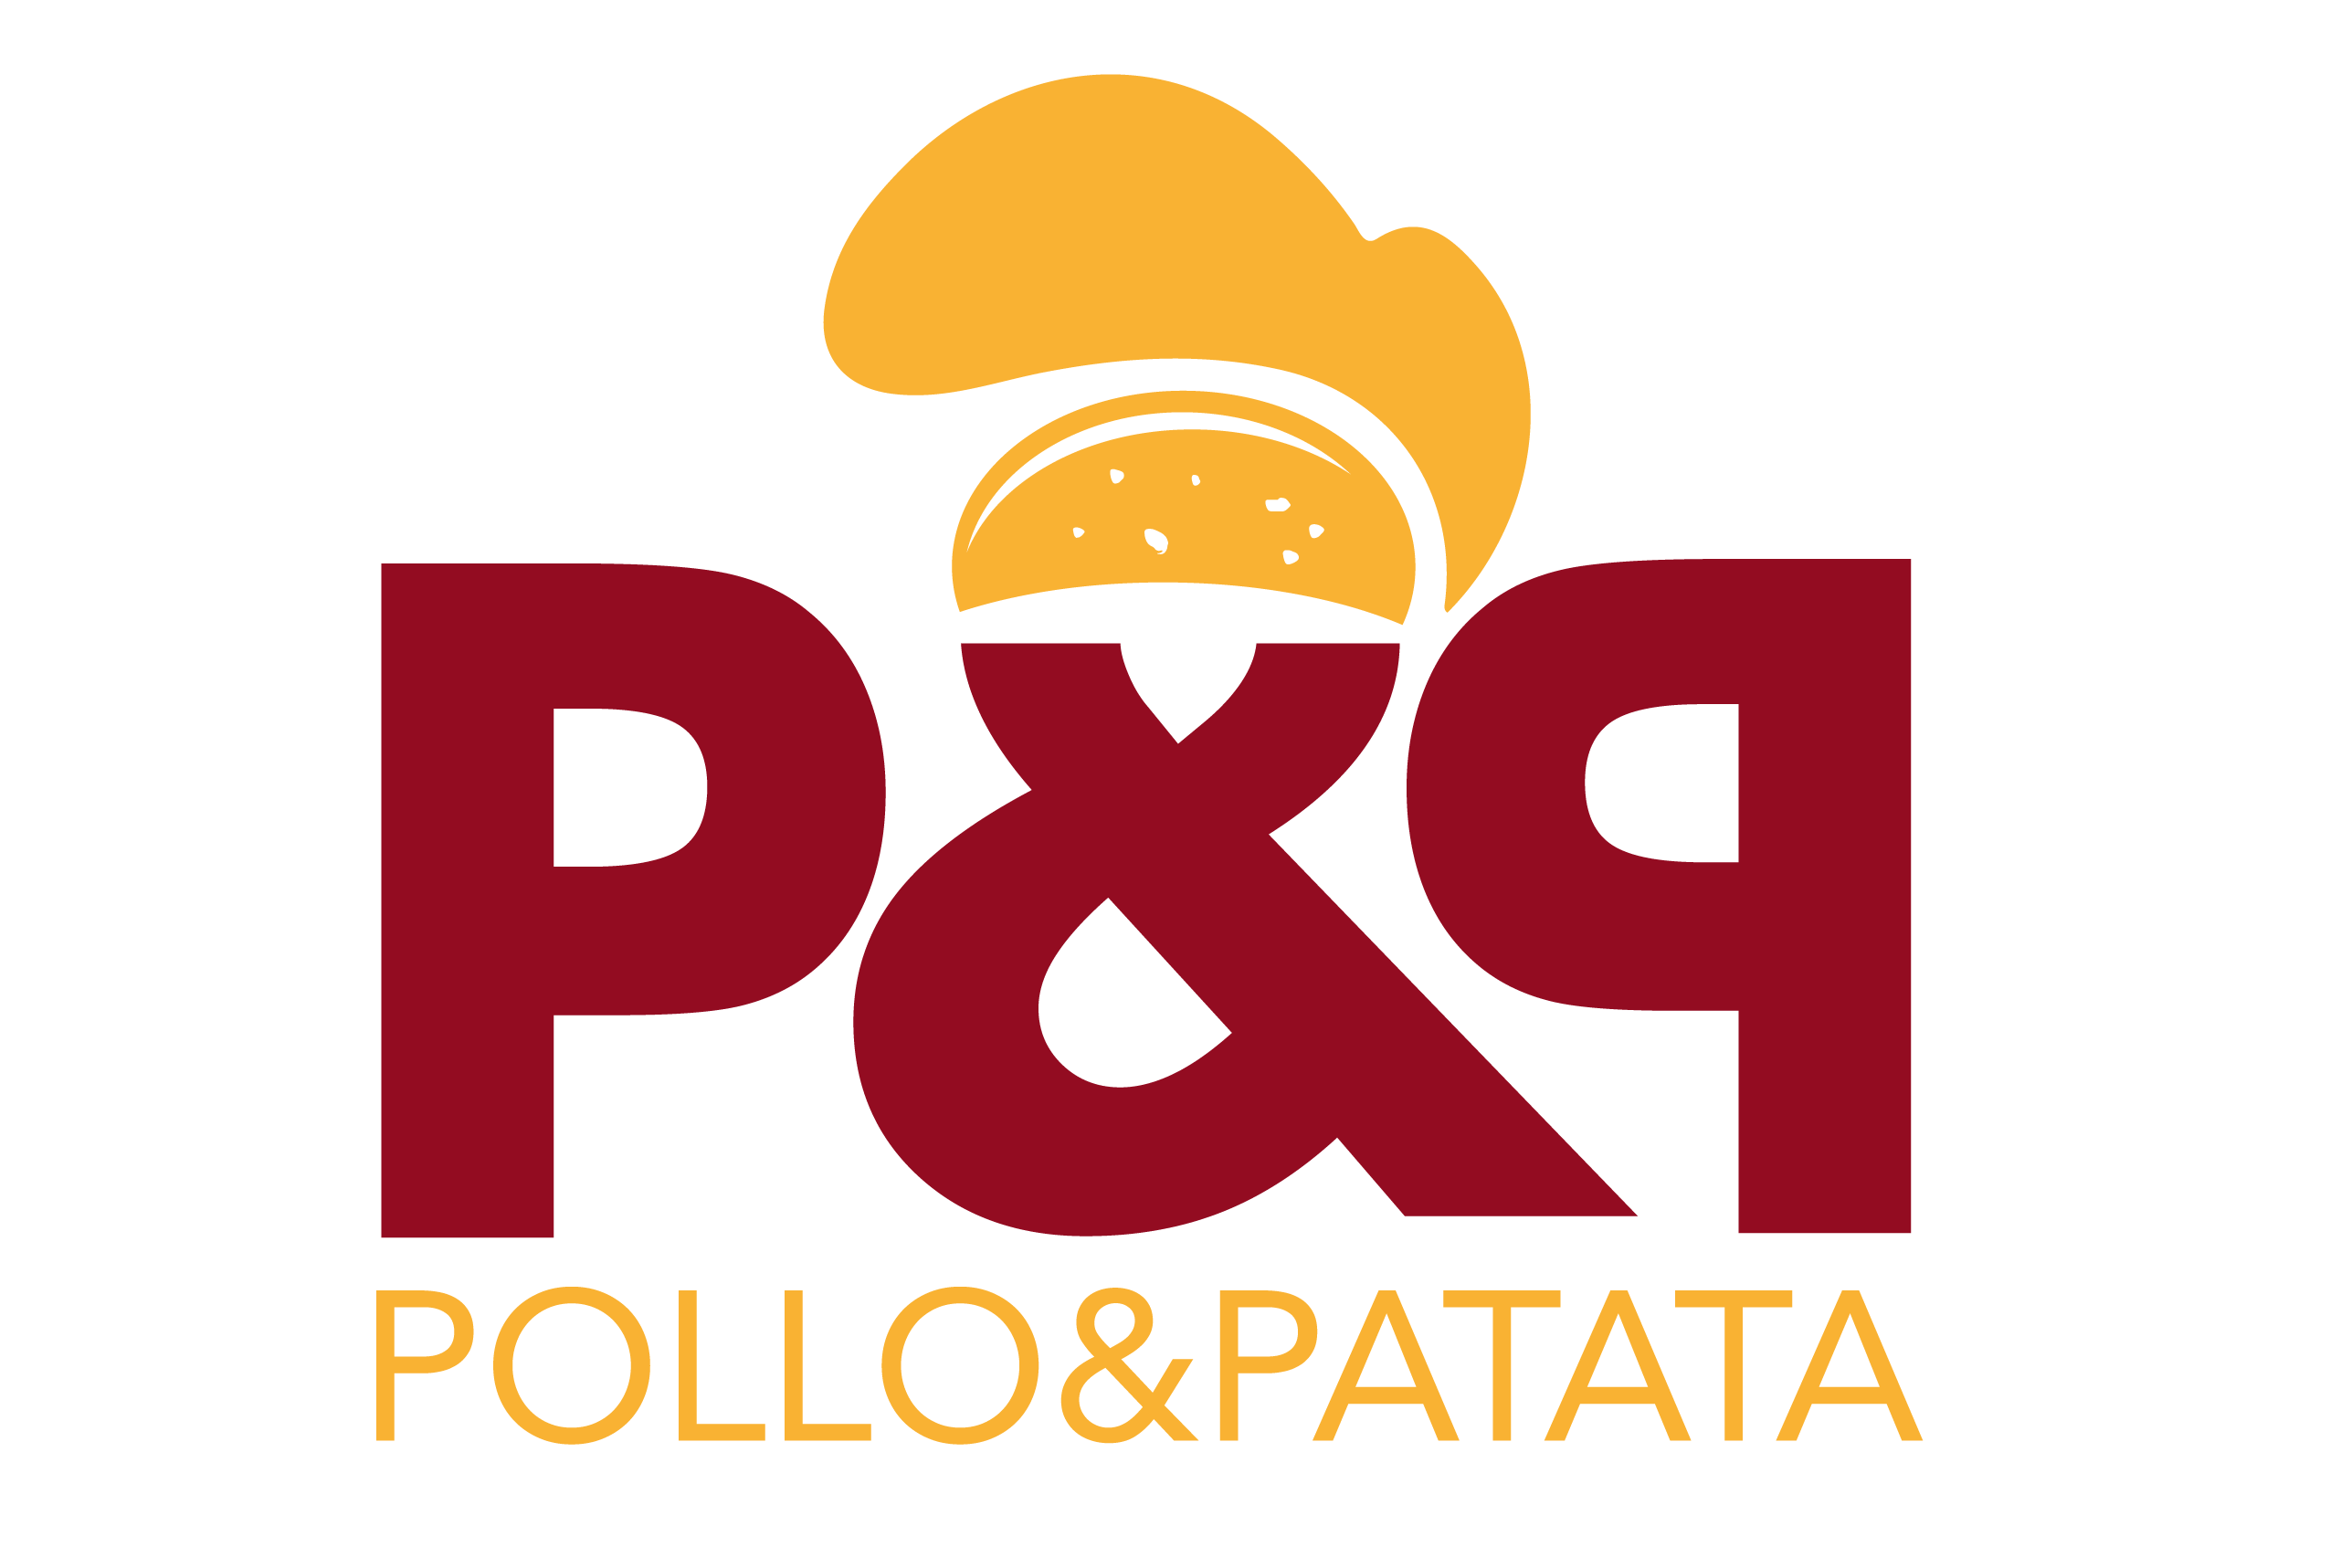 Pollo & Patata